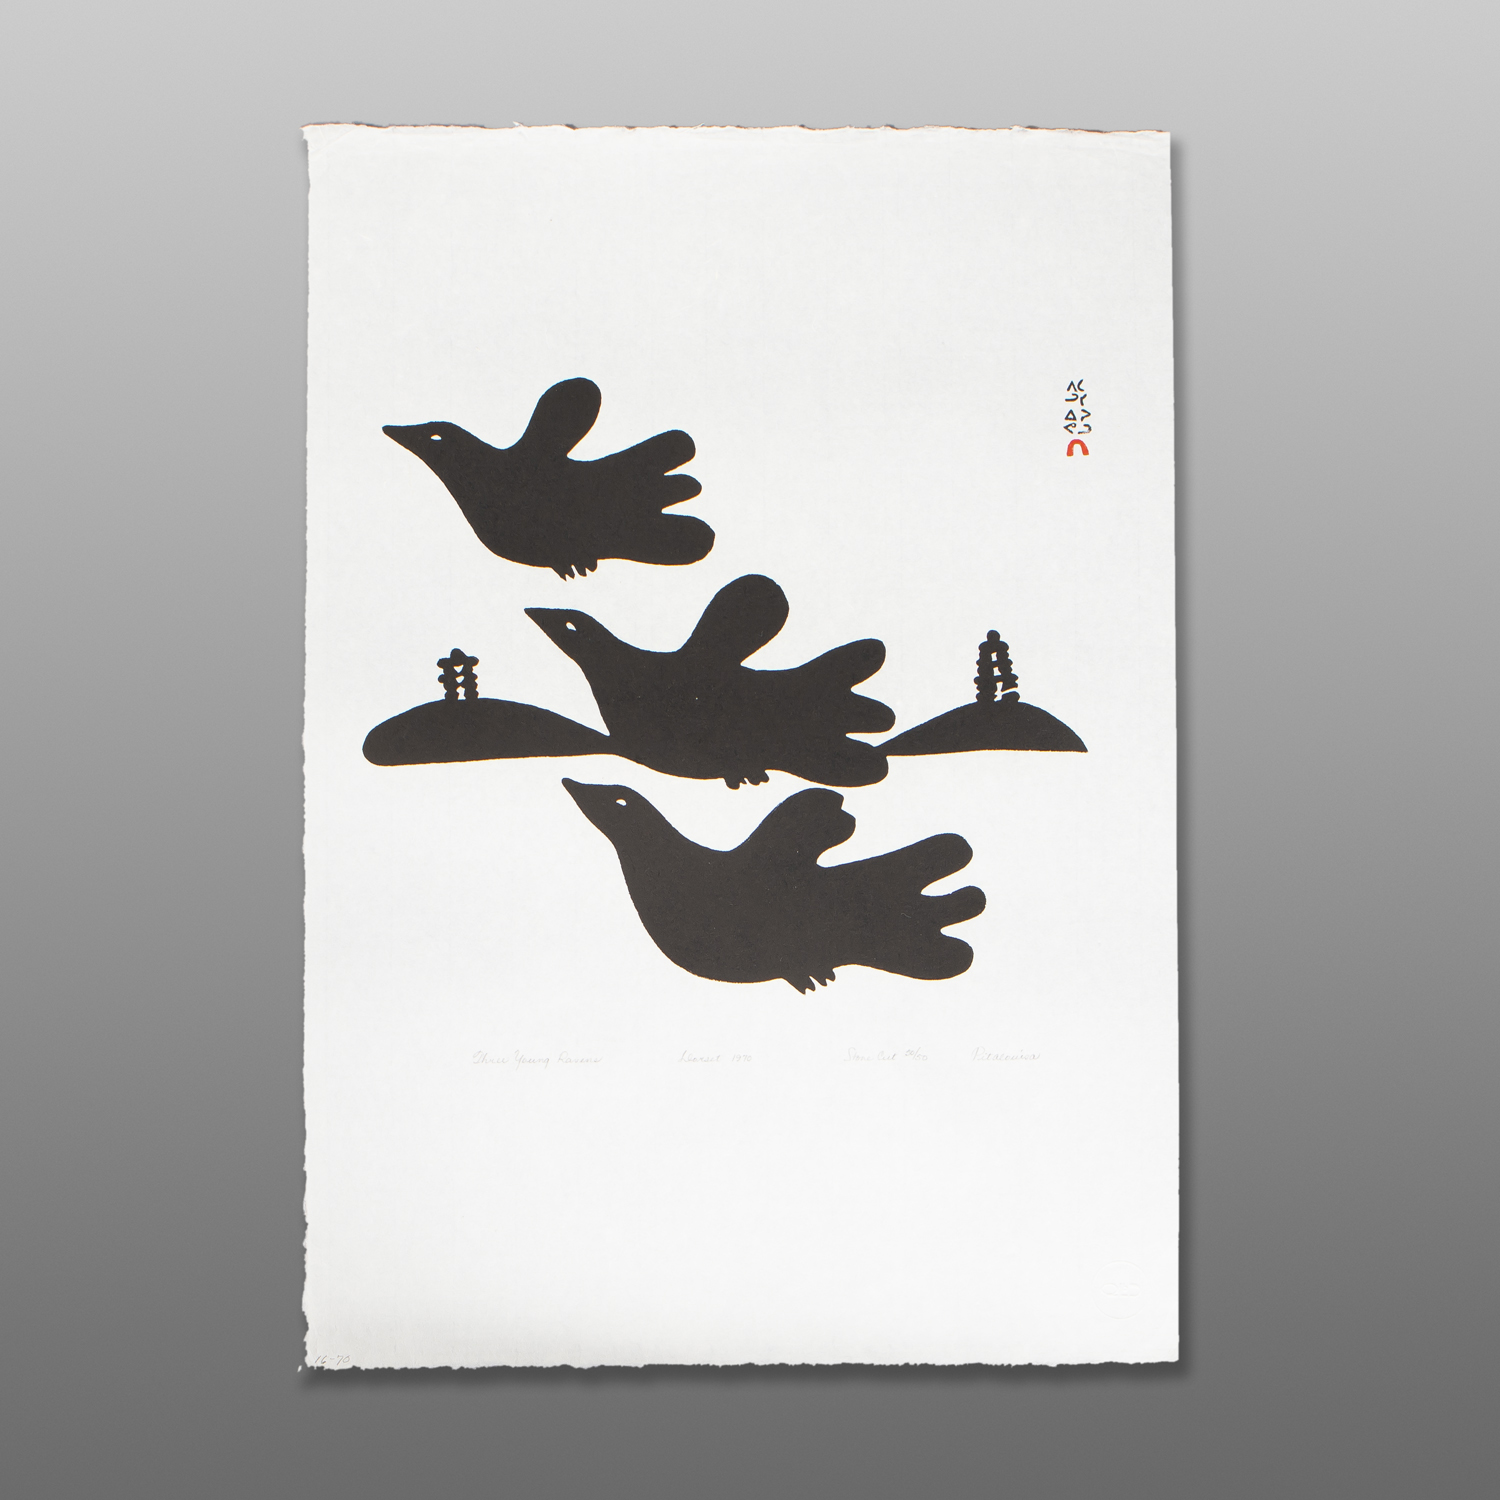 Three Young Ravens
Pitaloosie Saila
InuitStonecut
22½" x 16¼"
